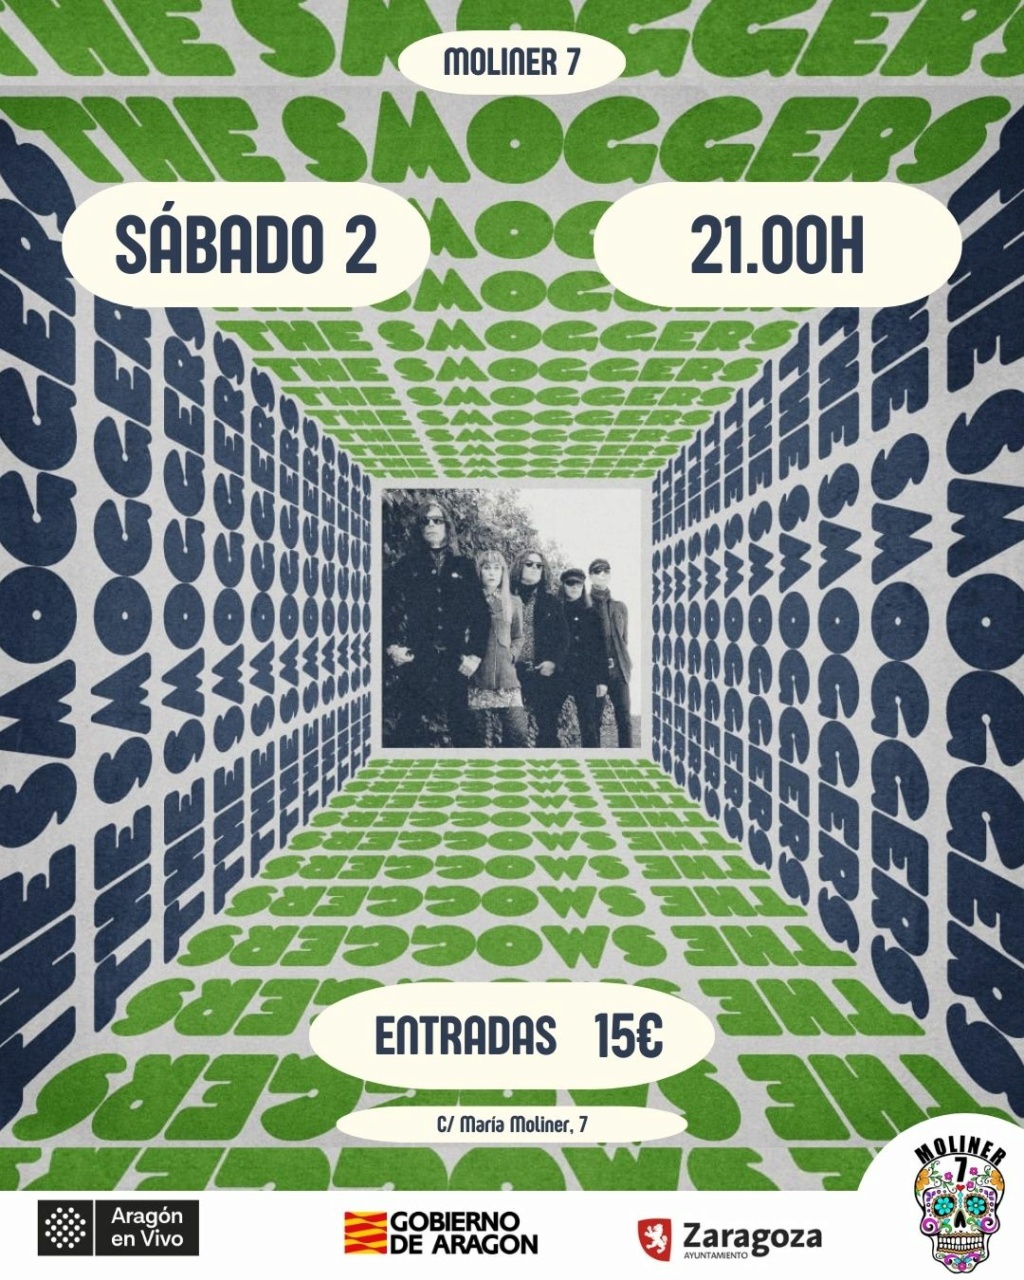 The Smoggers (Garage fuzz, Sevilla) Sabado10